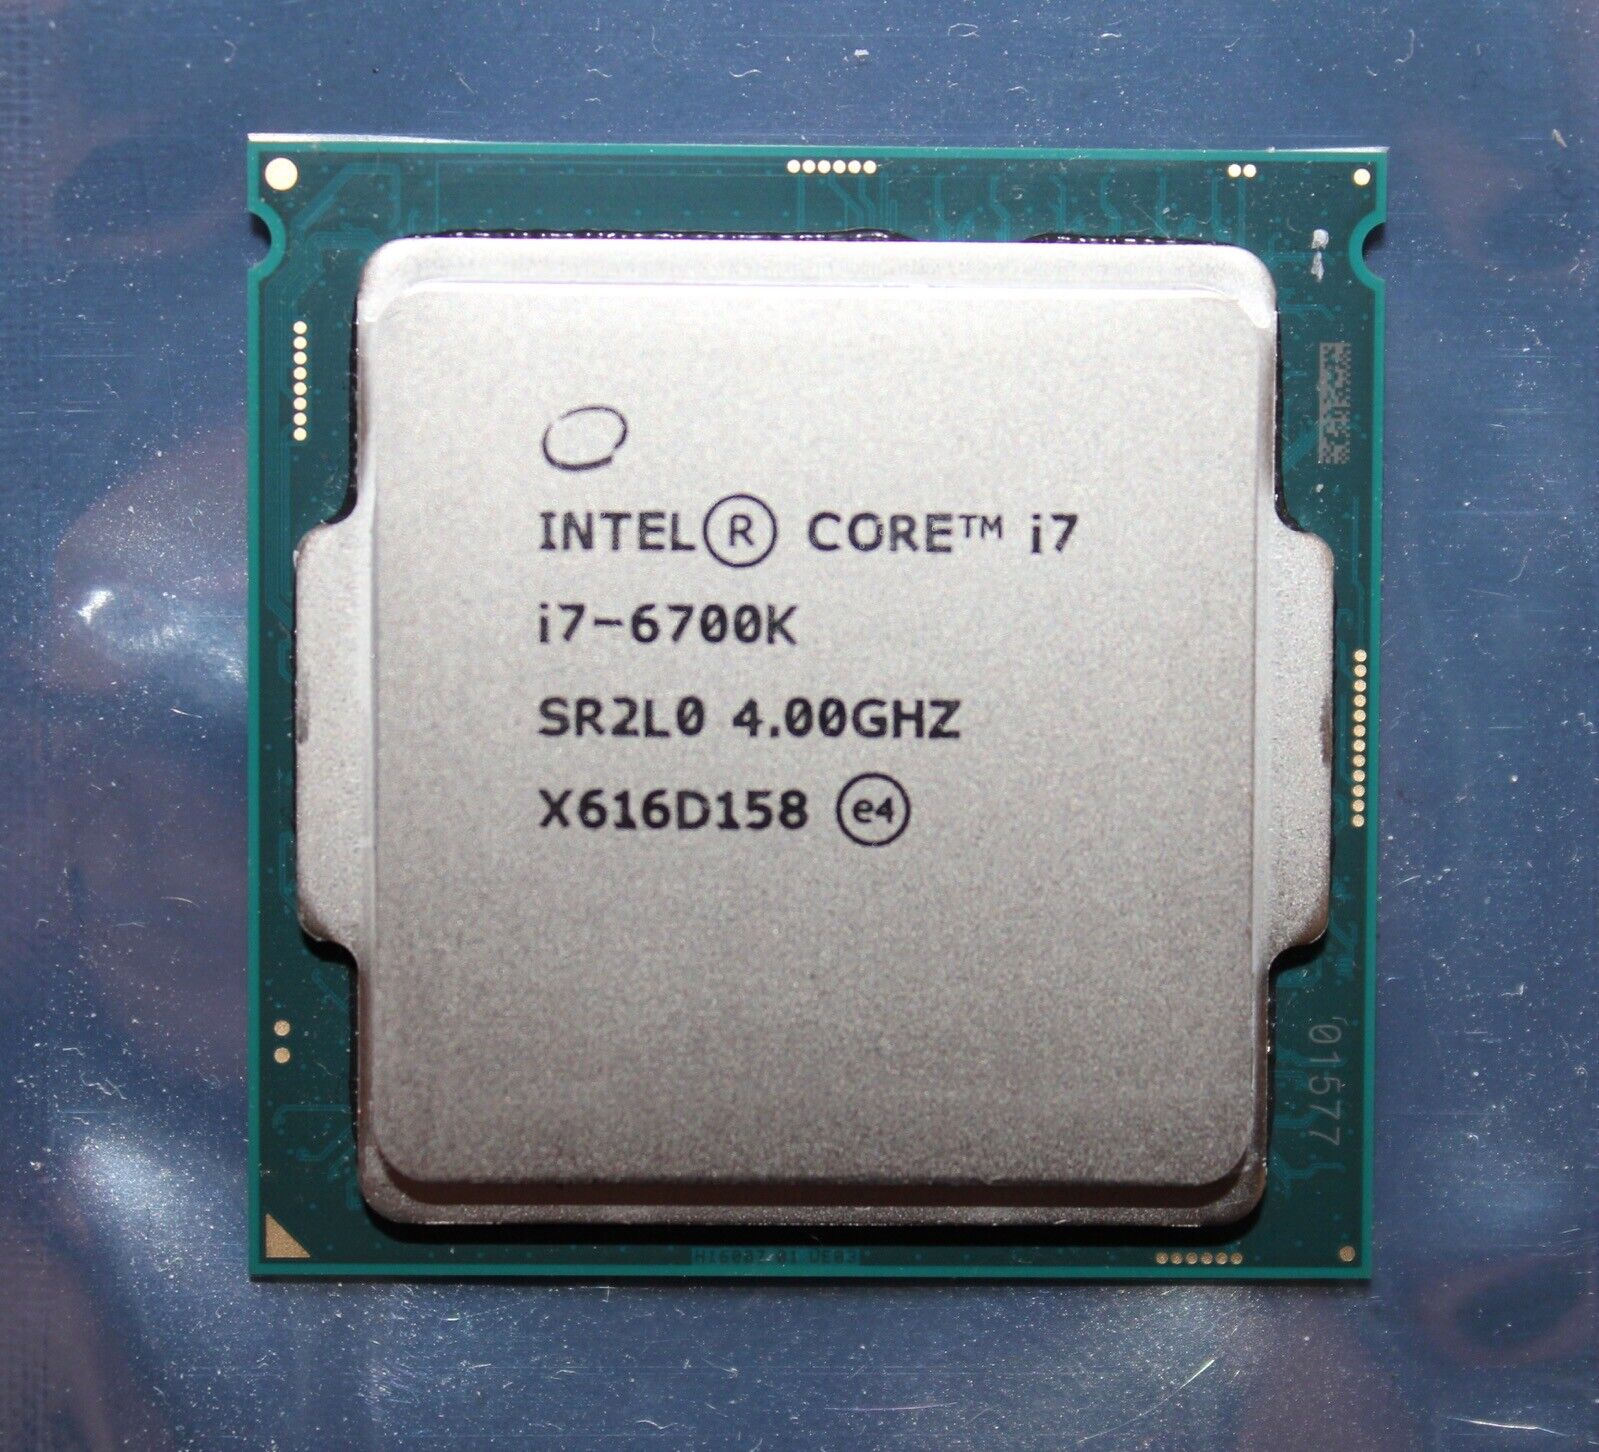 Intel Core i7-6700K 4.00 GHz SR2L0 CPU quad-core Desktop Processor